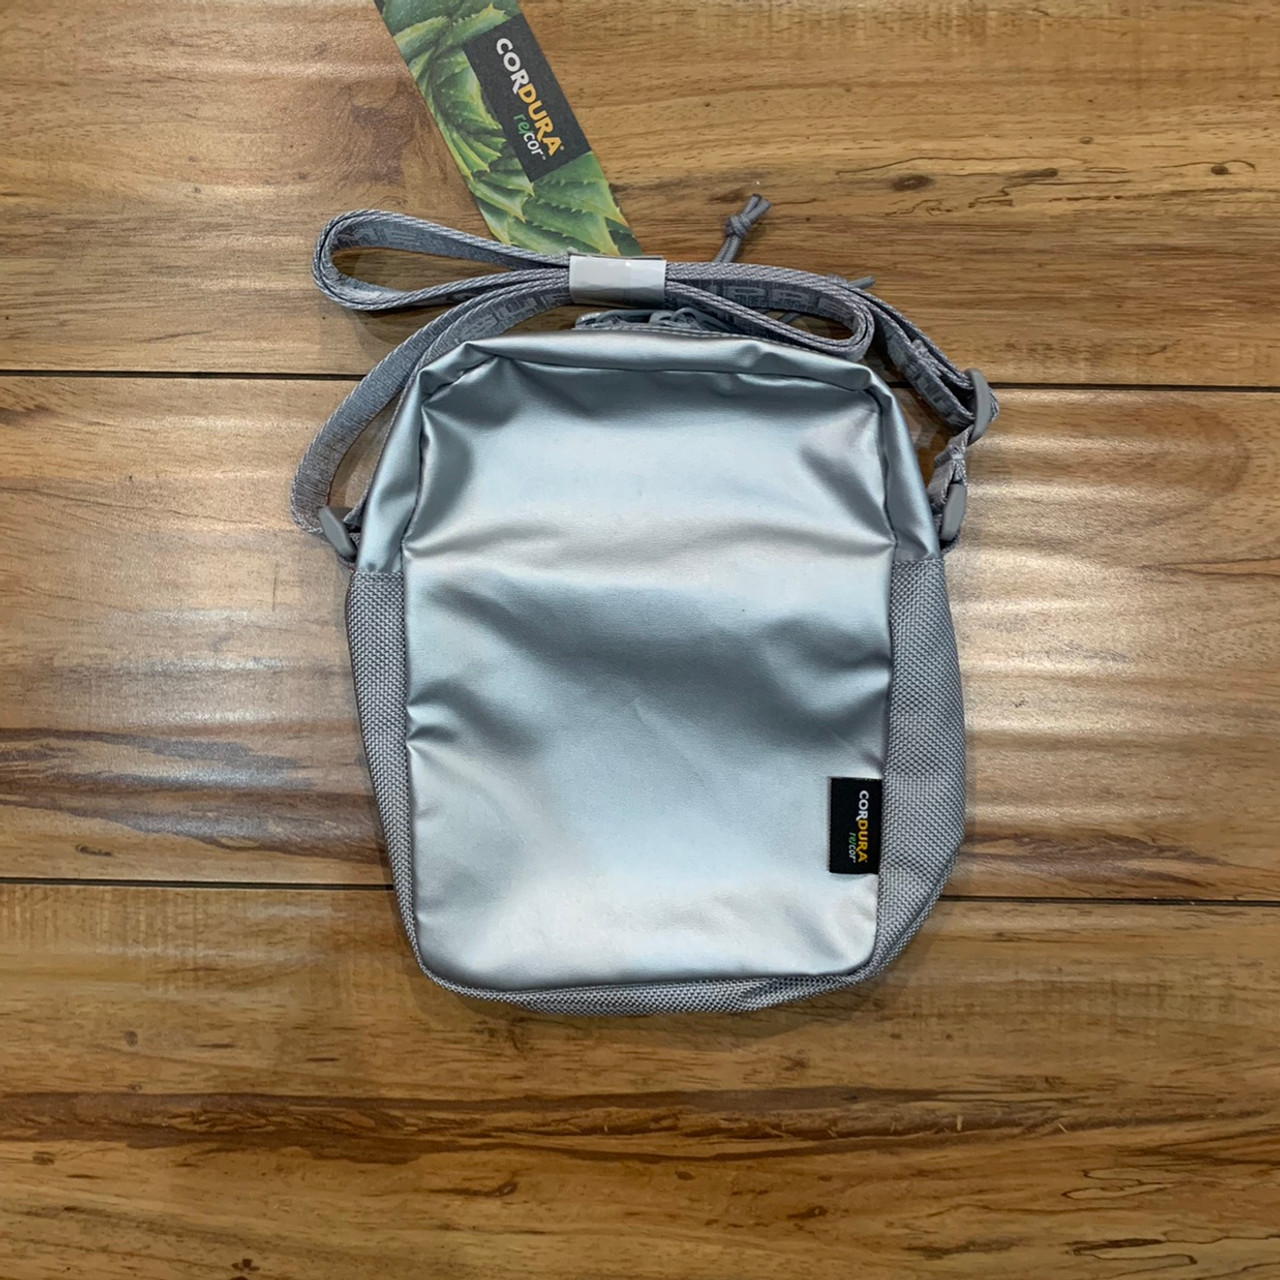 Supreme Shoulder Bag (FW22) Black - FW22 - US